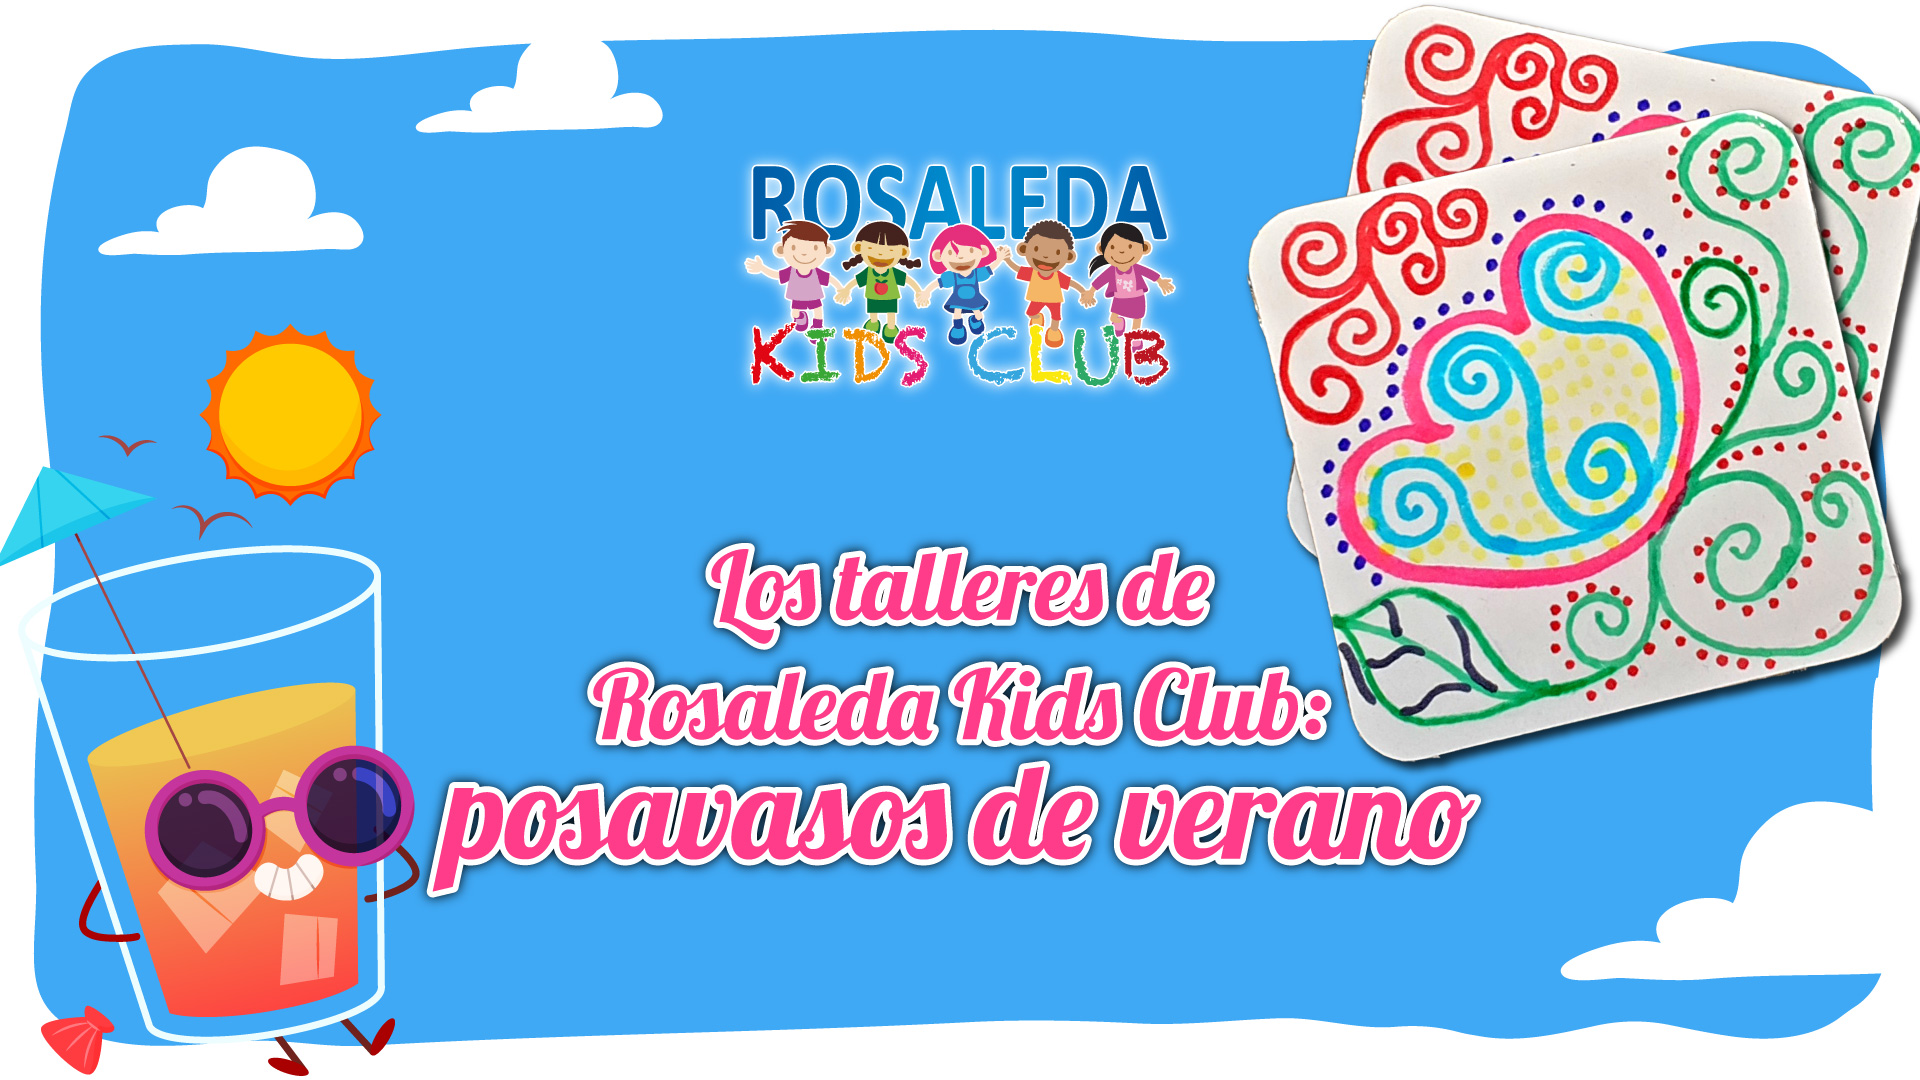 Rosaleda Kids Club: posavasos de verano